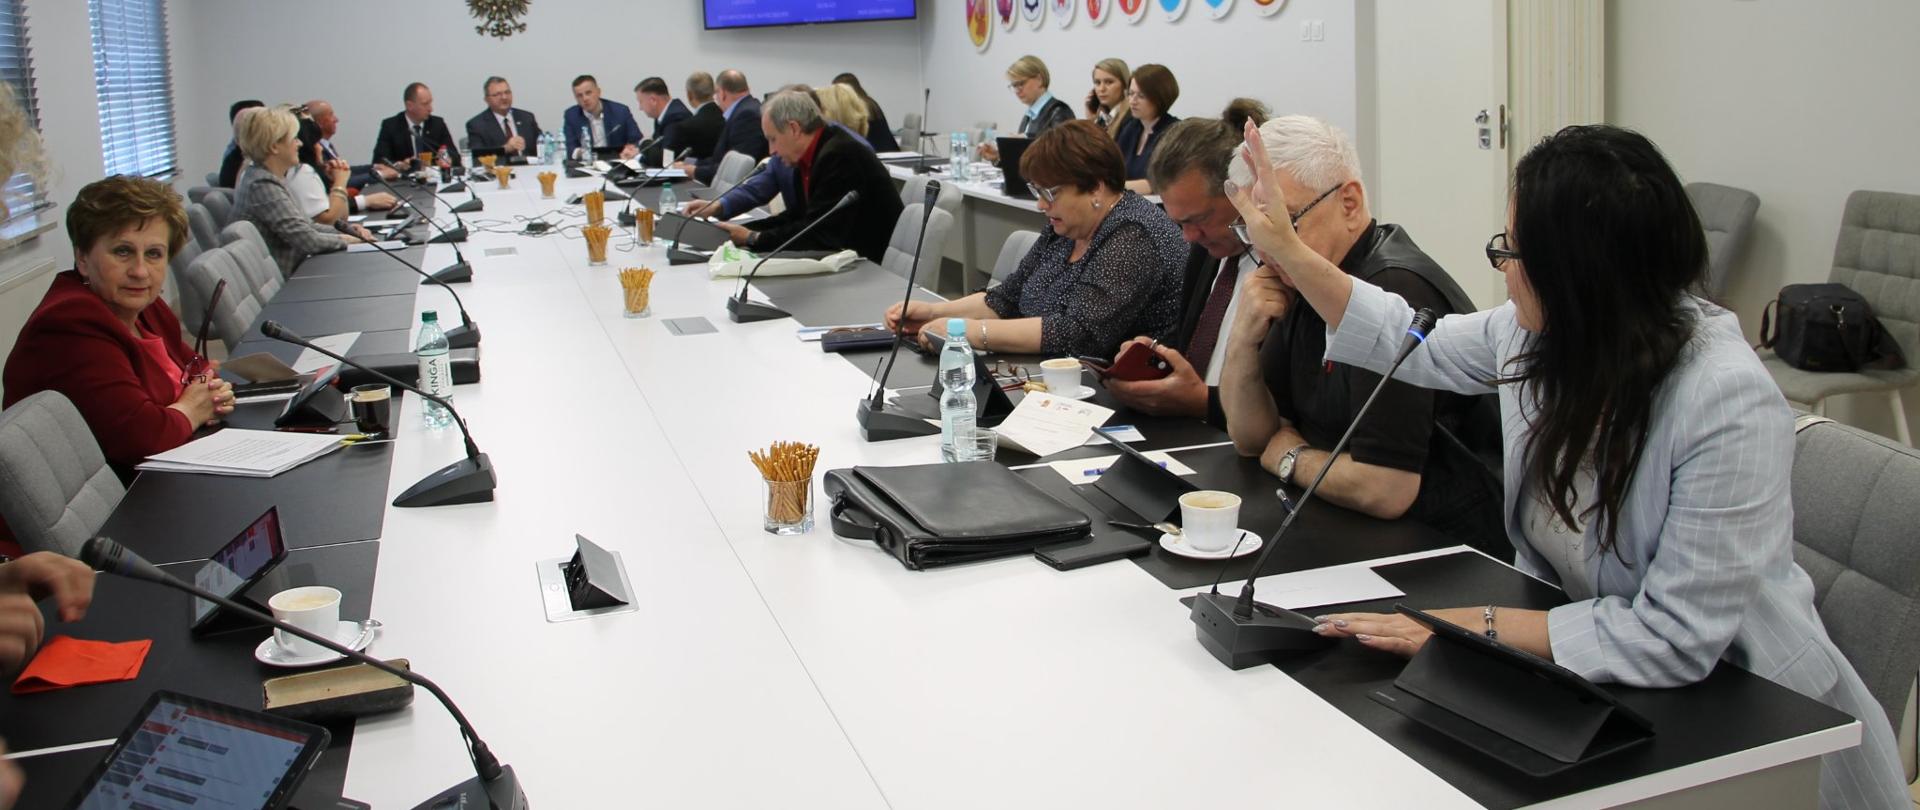 LIX Sesja Rady Powiatu Białostockiego - widok ogólny na salę konferencyjną Starostwa
